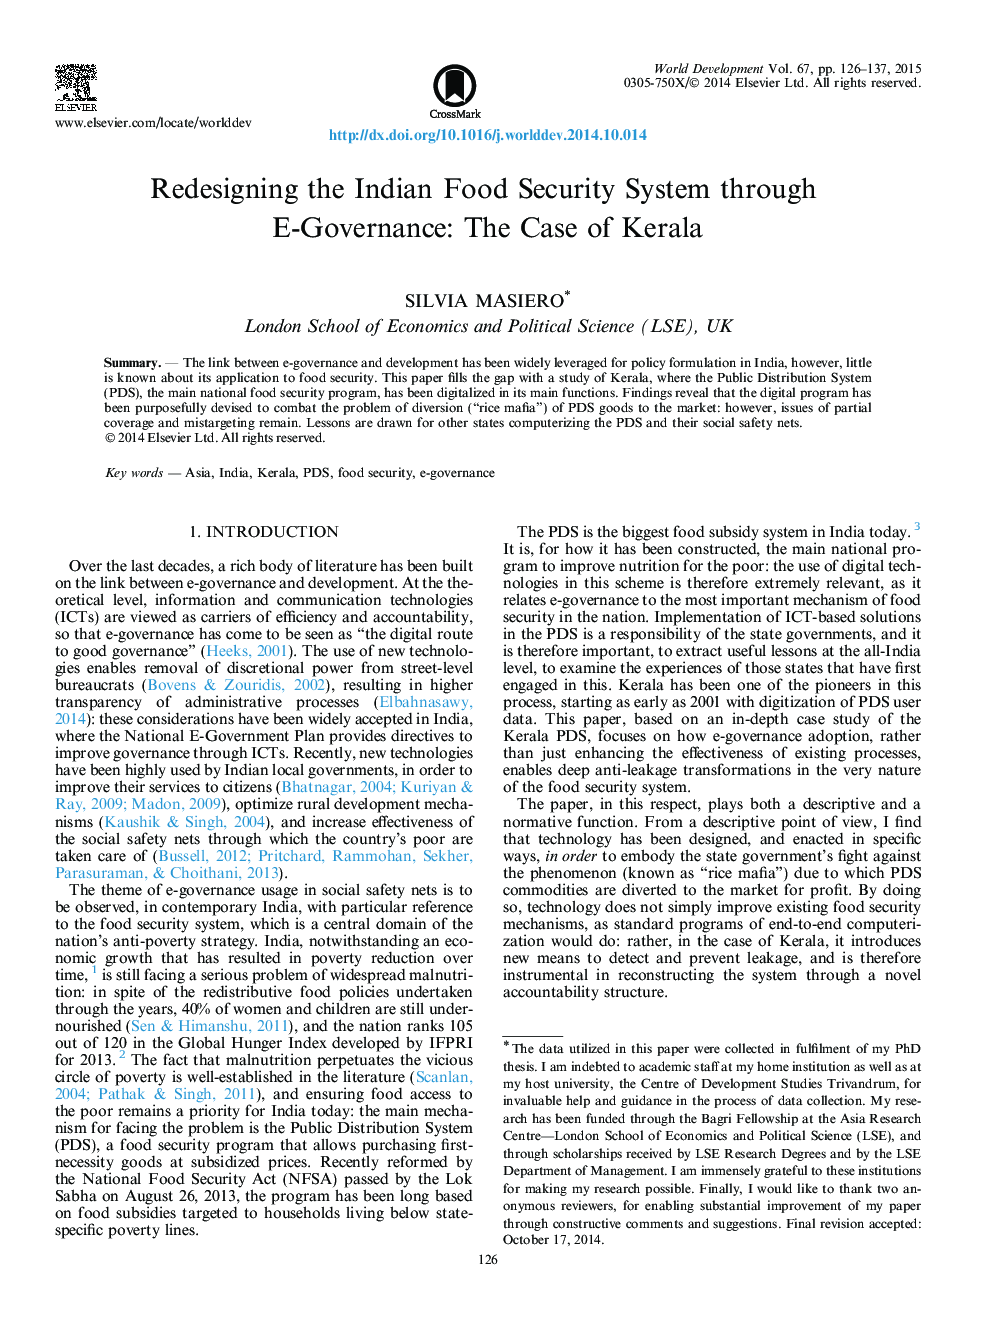 طراحی مجدد سیستم ایمنی غذای هند از طریق مدیریت الکترونیکی: مورد کرالا 